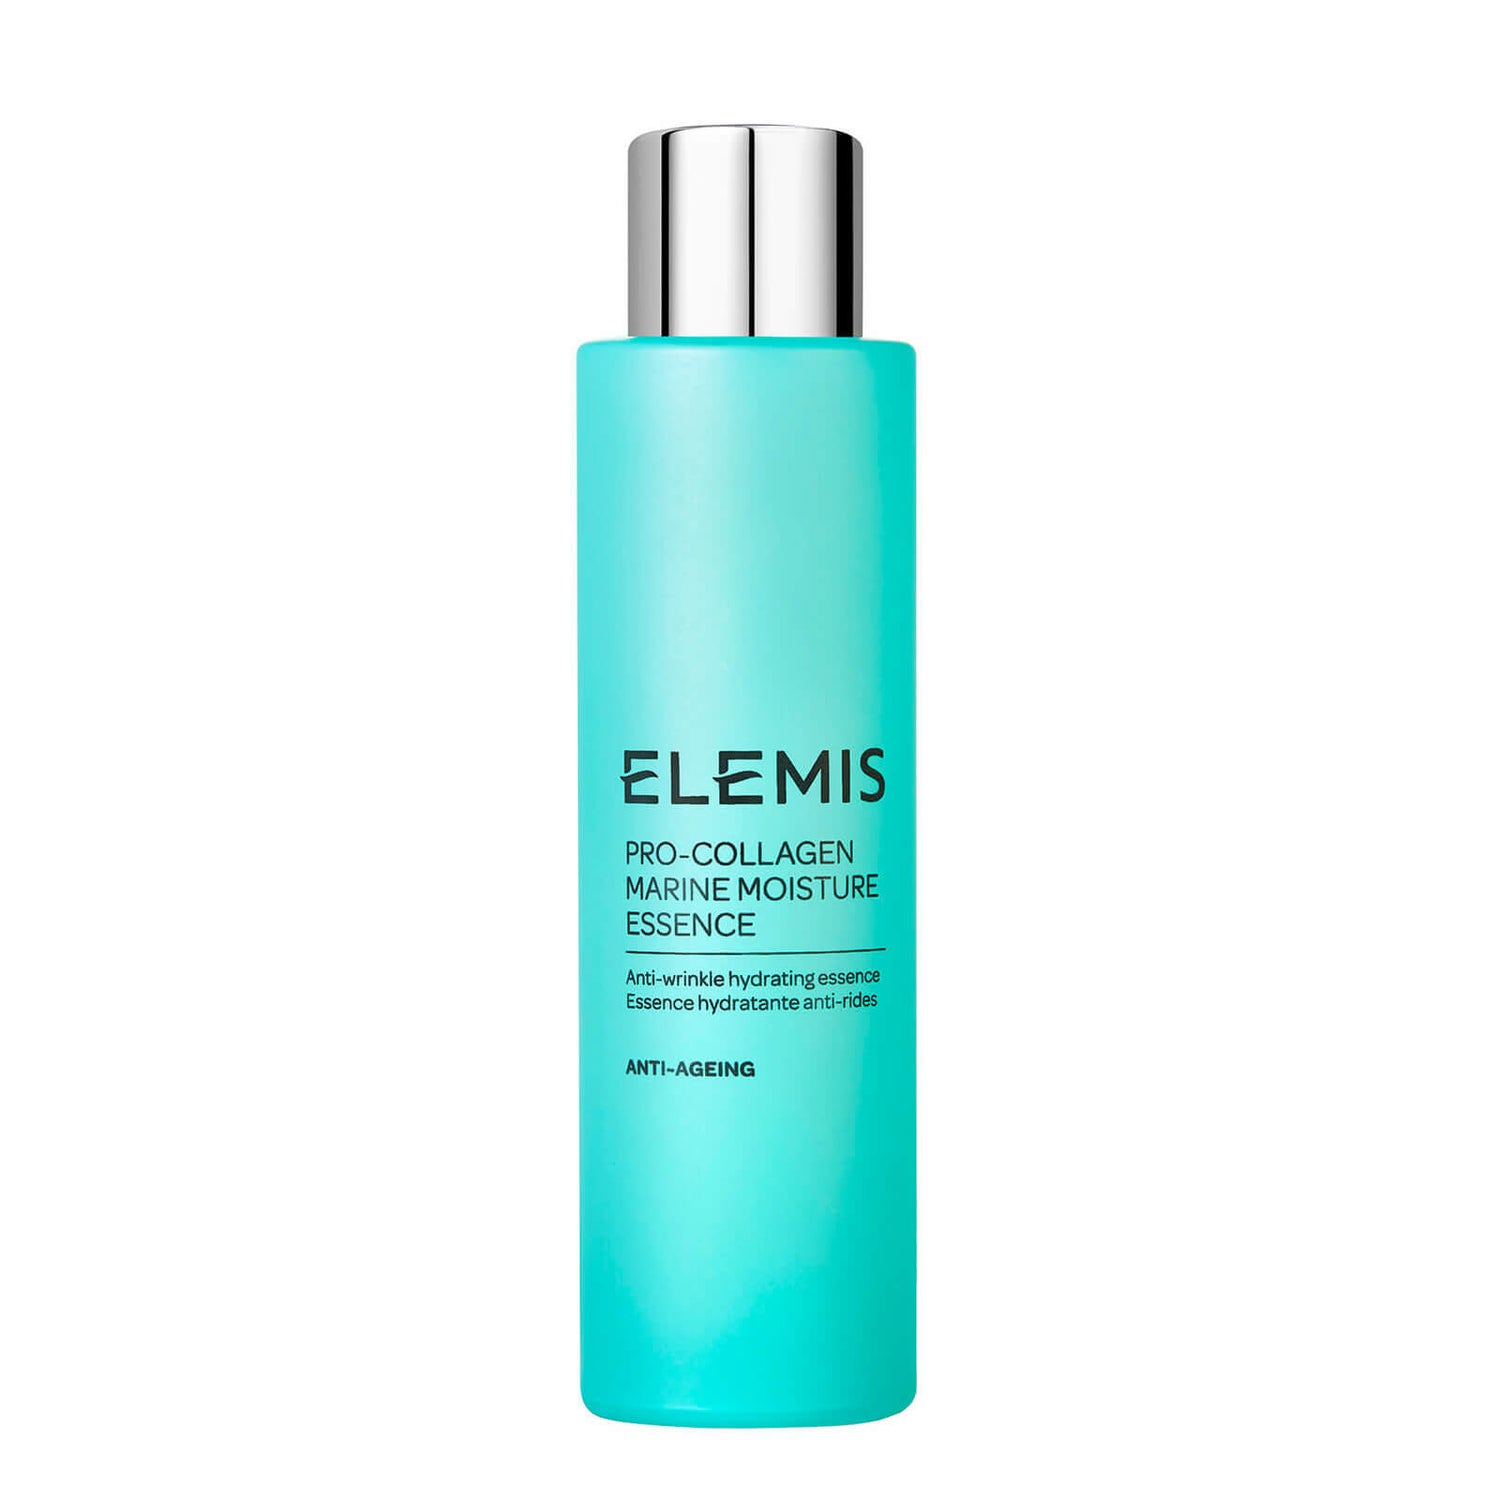 ELEMIS Pro-Collagen Marine Moisture Essence 100 ml. - Pro-Collagen